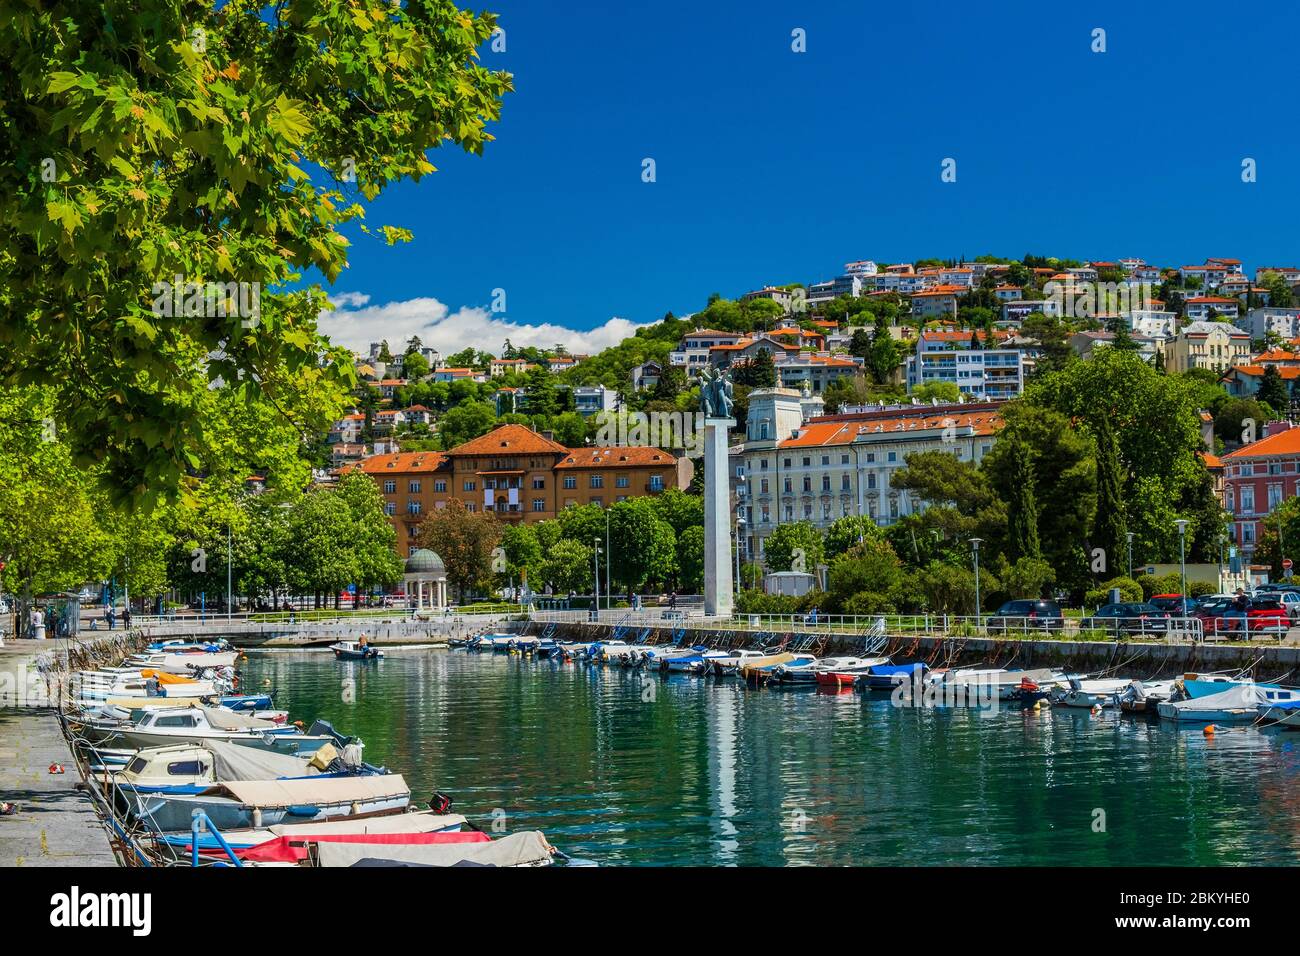 Croazia, città di Rijeka, vista dello skyline dal Delta e fiume Rjecina sulle barche di fronte, colorati vecchi edifici, monumenti e Trsat sulla collina in Foto Stock